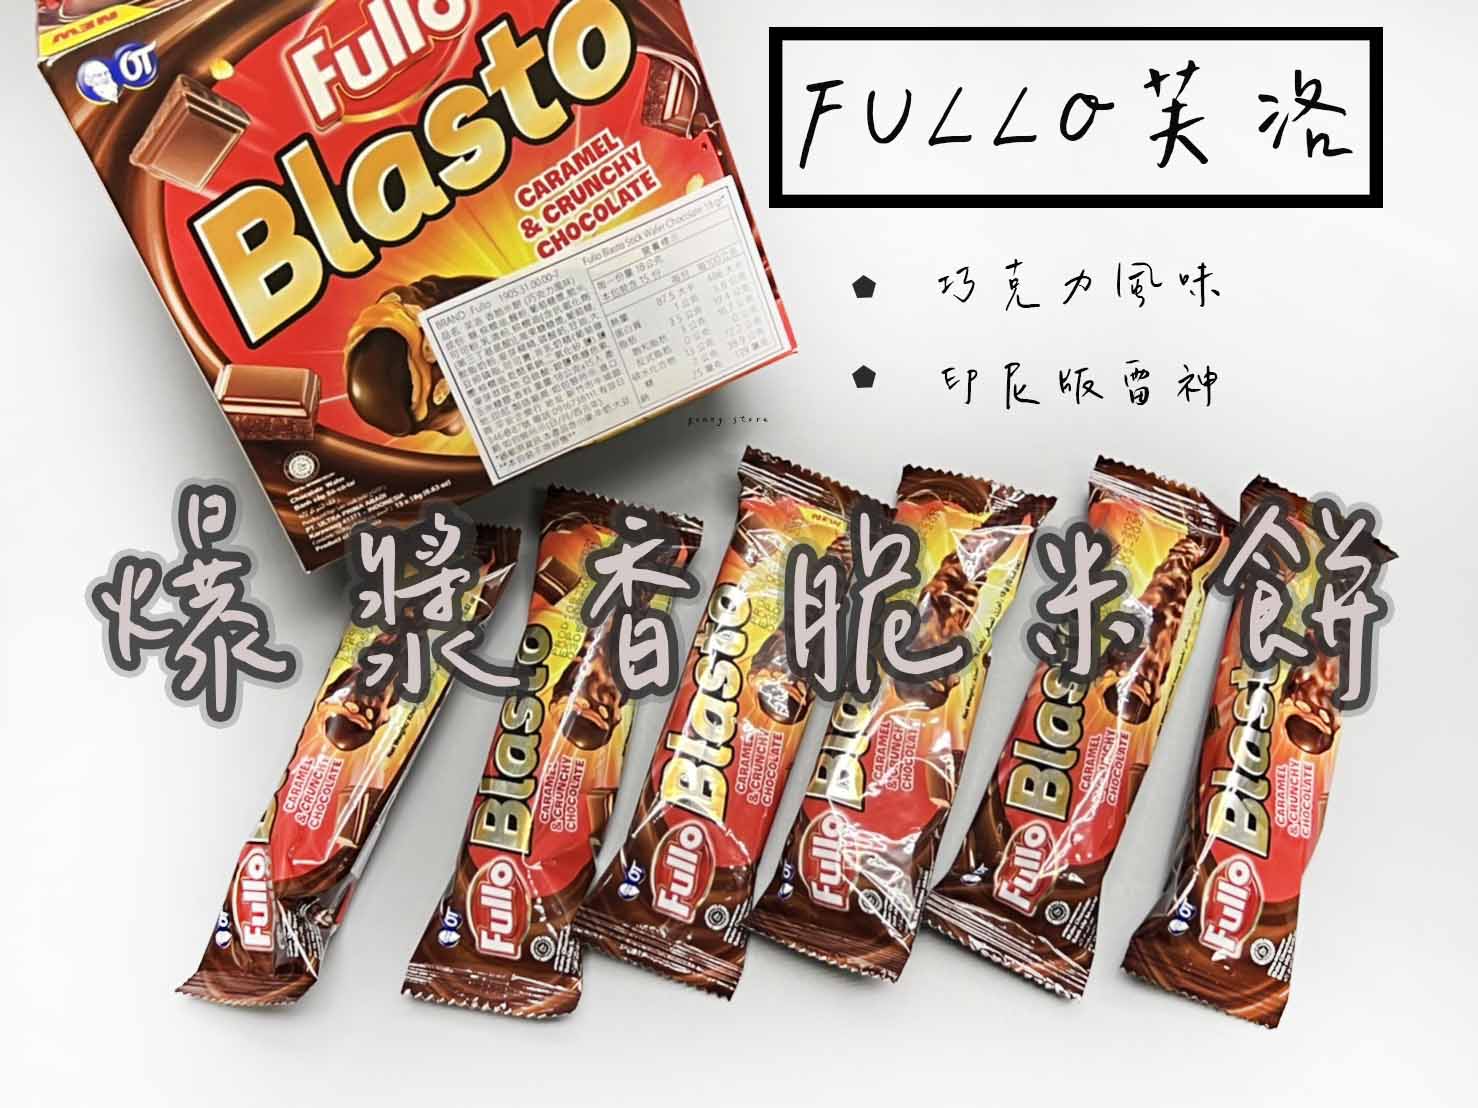 現貨商品 Fullo Blasto 大魔法巧克力棒 巧克力棒 零食 爆漿巧克力 巧克力 餅乾